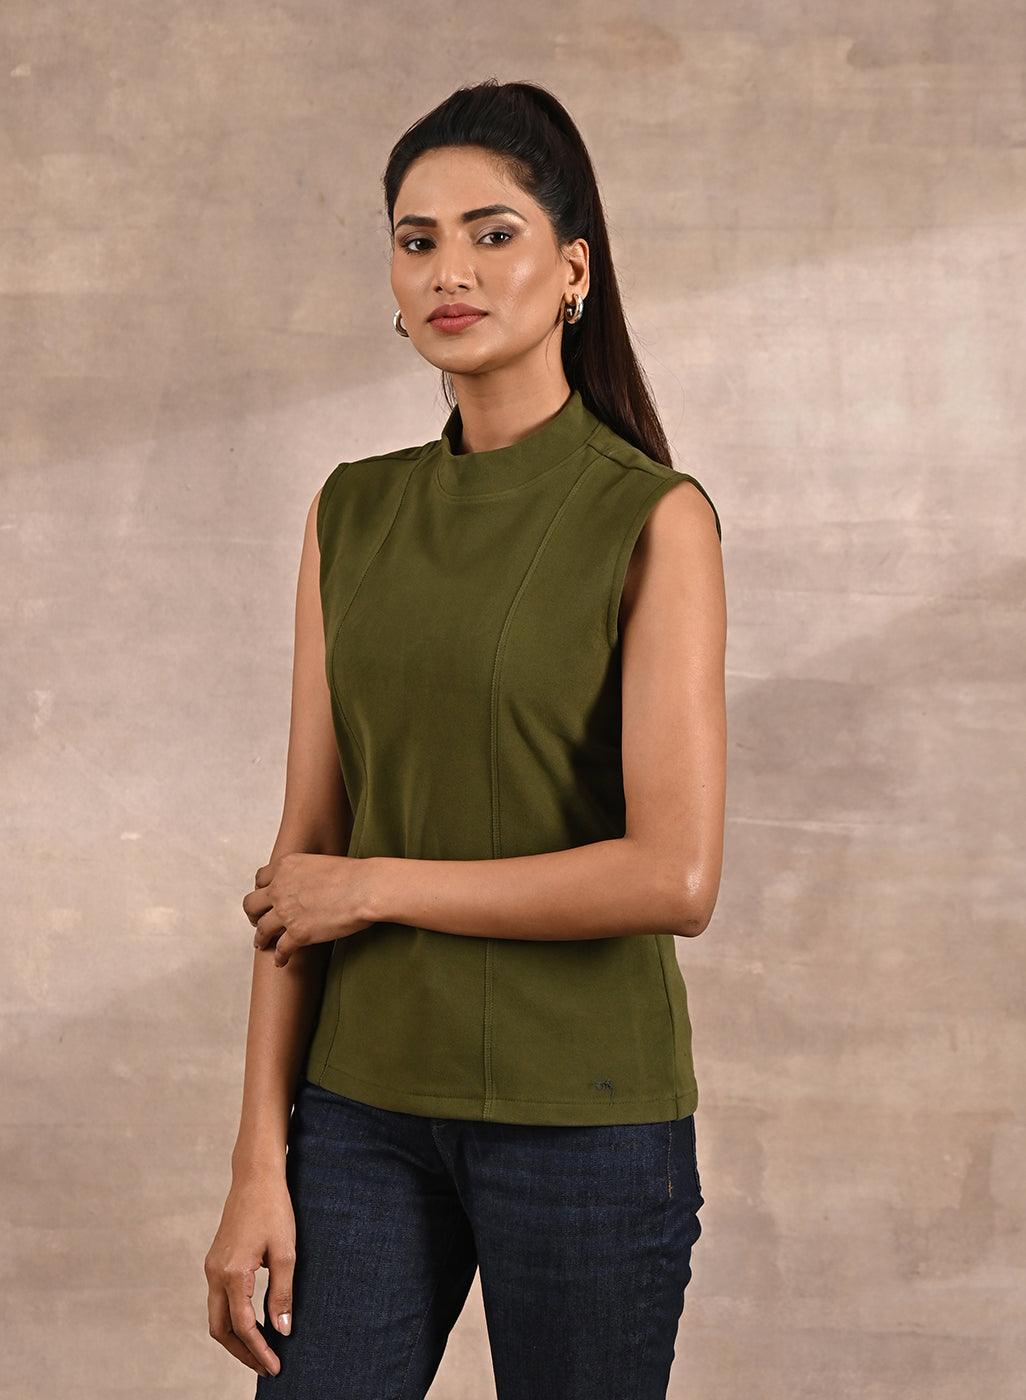 Sleeveless Tops For Women - Buy Sleeveless Tops For Women Online Starting  at Just ₹95